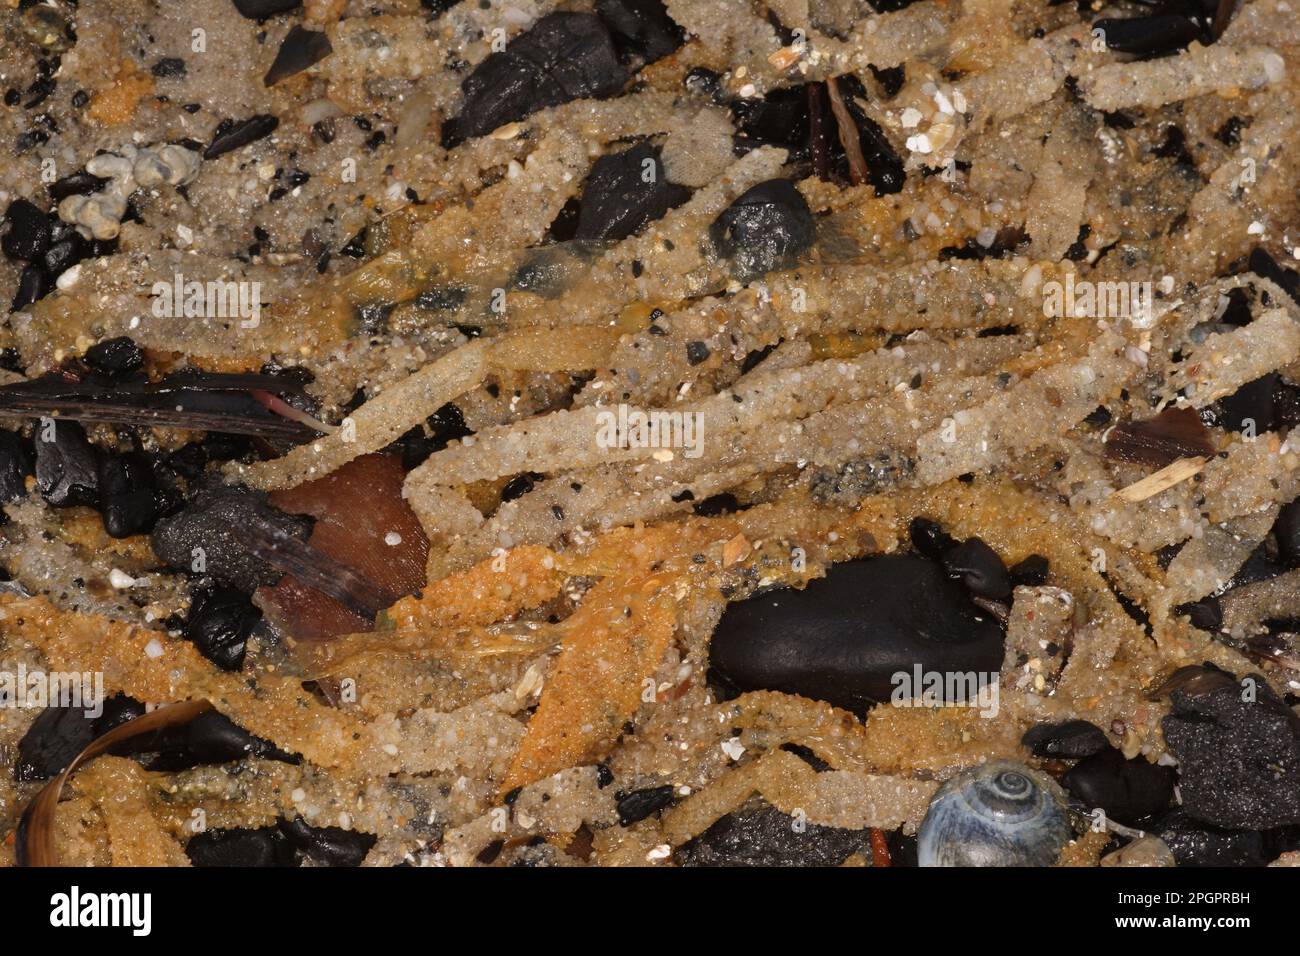 Sand Mason Worm (Lanice conchilega) tubes, washed up on strandline, Studland Beach, Dorset, England, United Kingdom Stock Photo